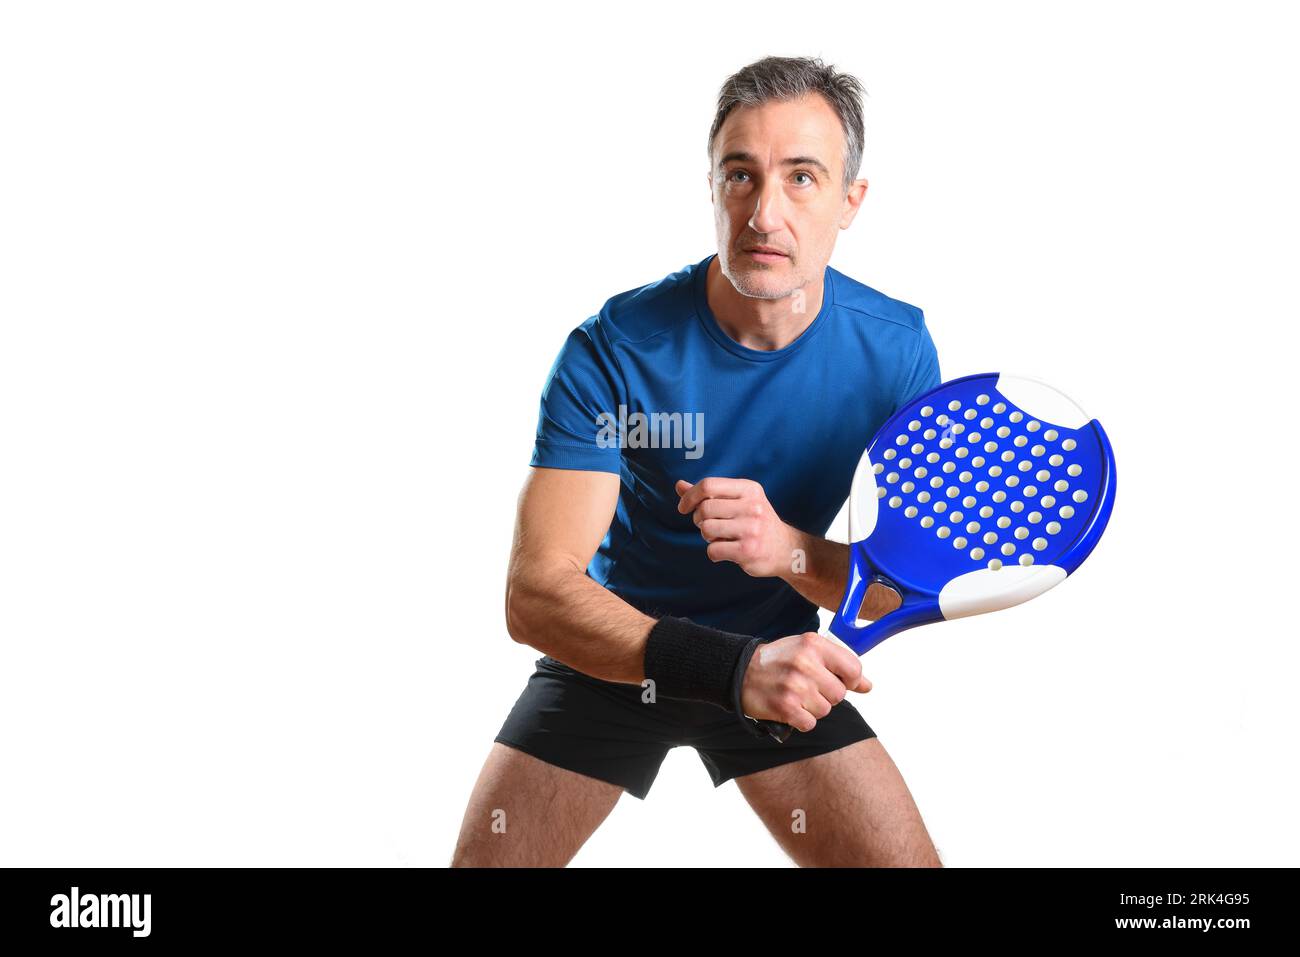 Ritratto di un uomo che gioca a PADEL tennis in posizione per colpire una palla rovescia indossando abiti sportivi blu e neri e sfondo bianco isolato. Vista frontale Foto Stock